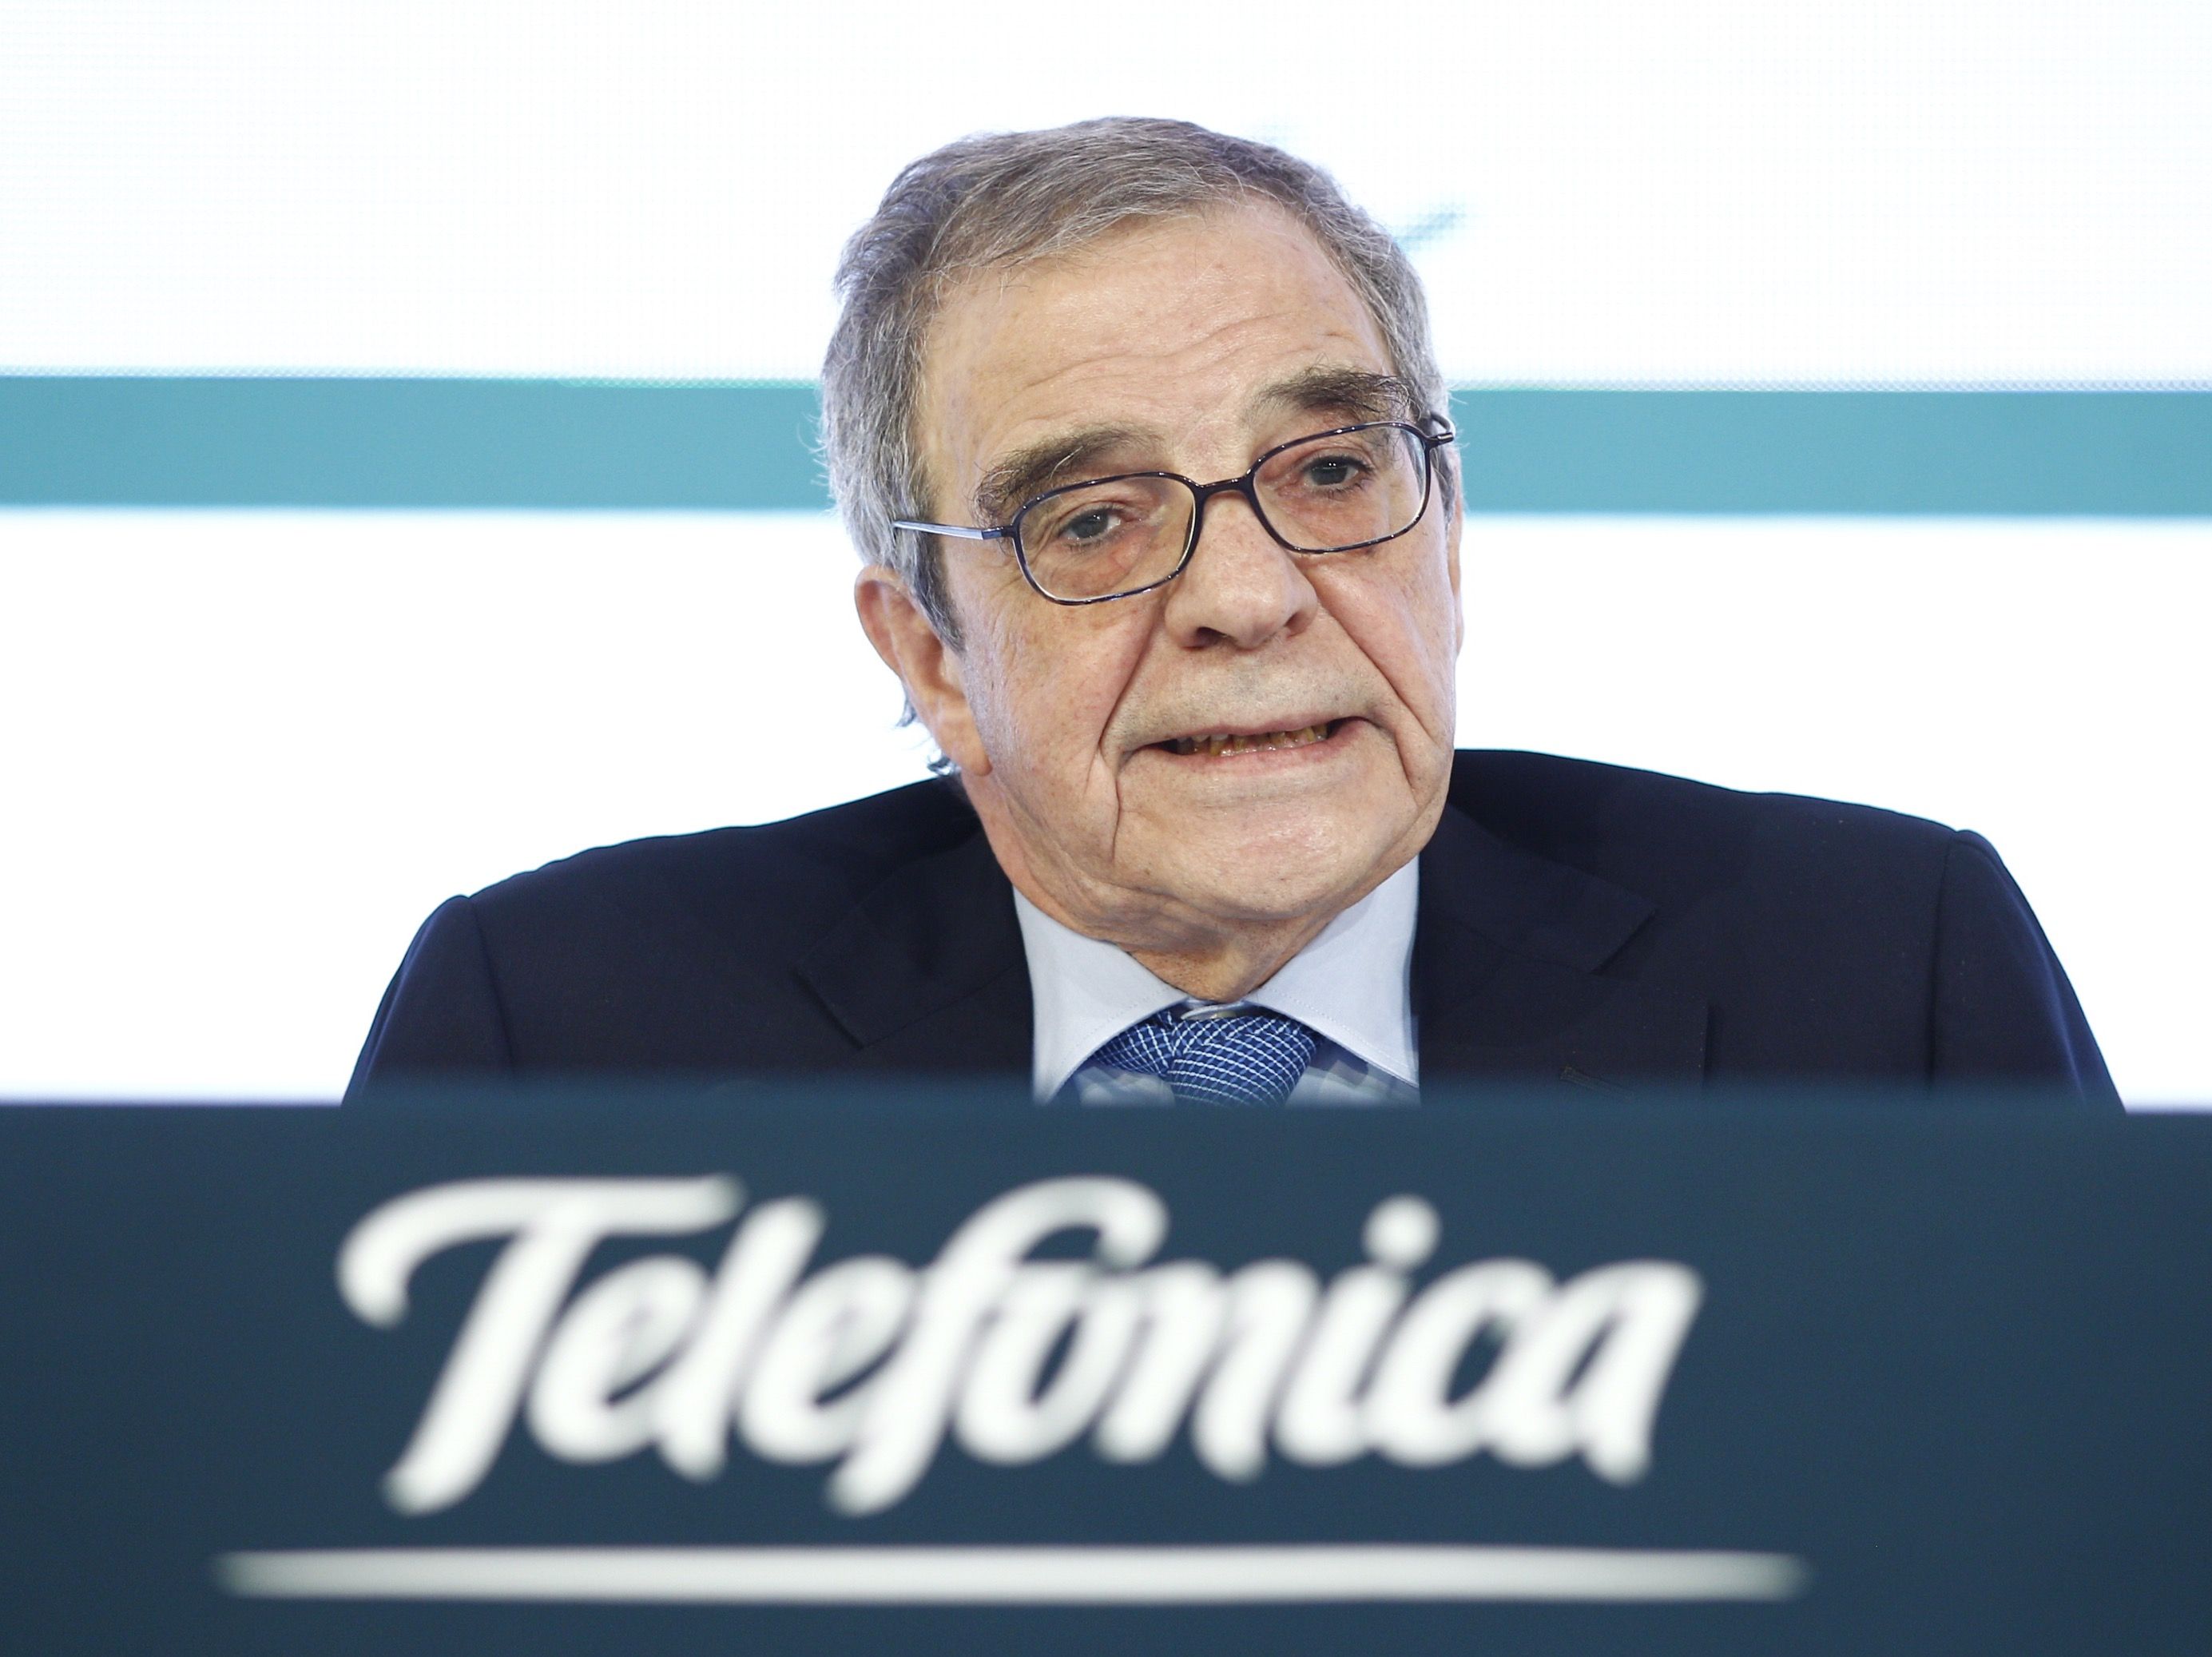 César Alierta, ex presidente de Telefónica, en coma inducido